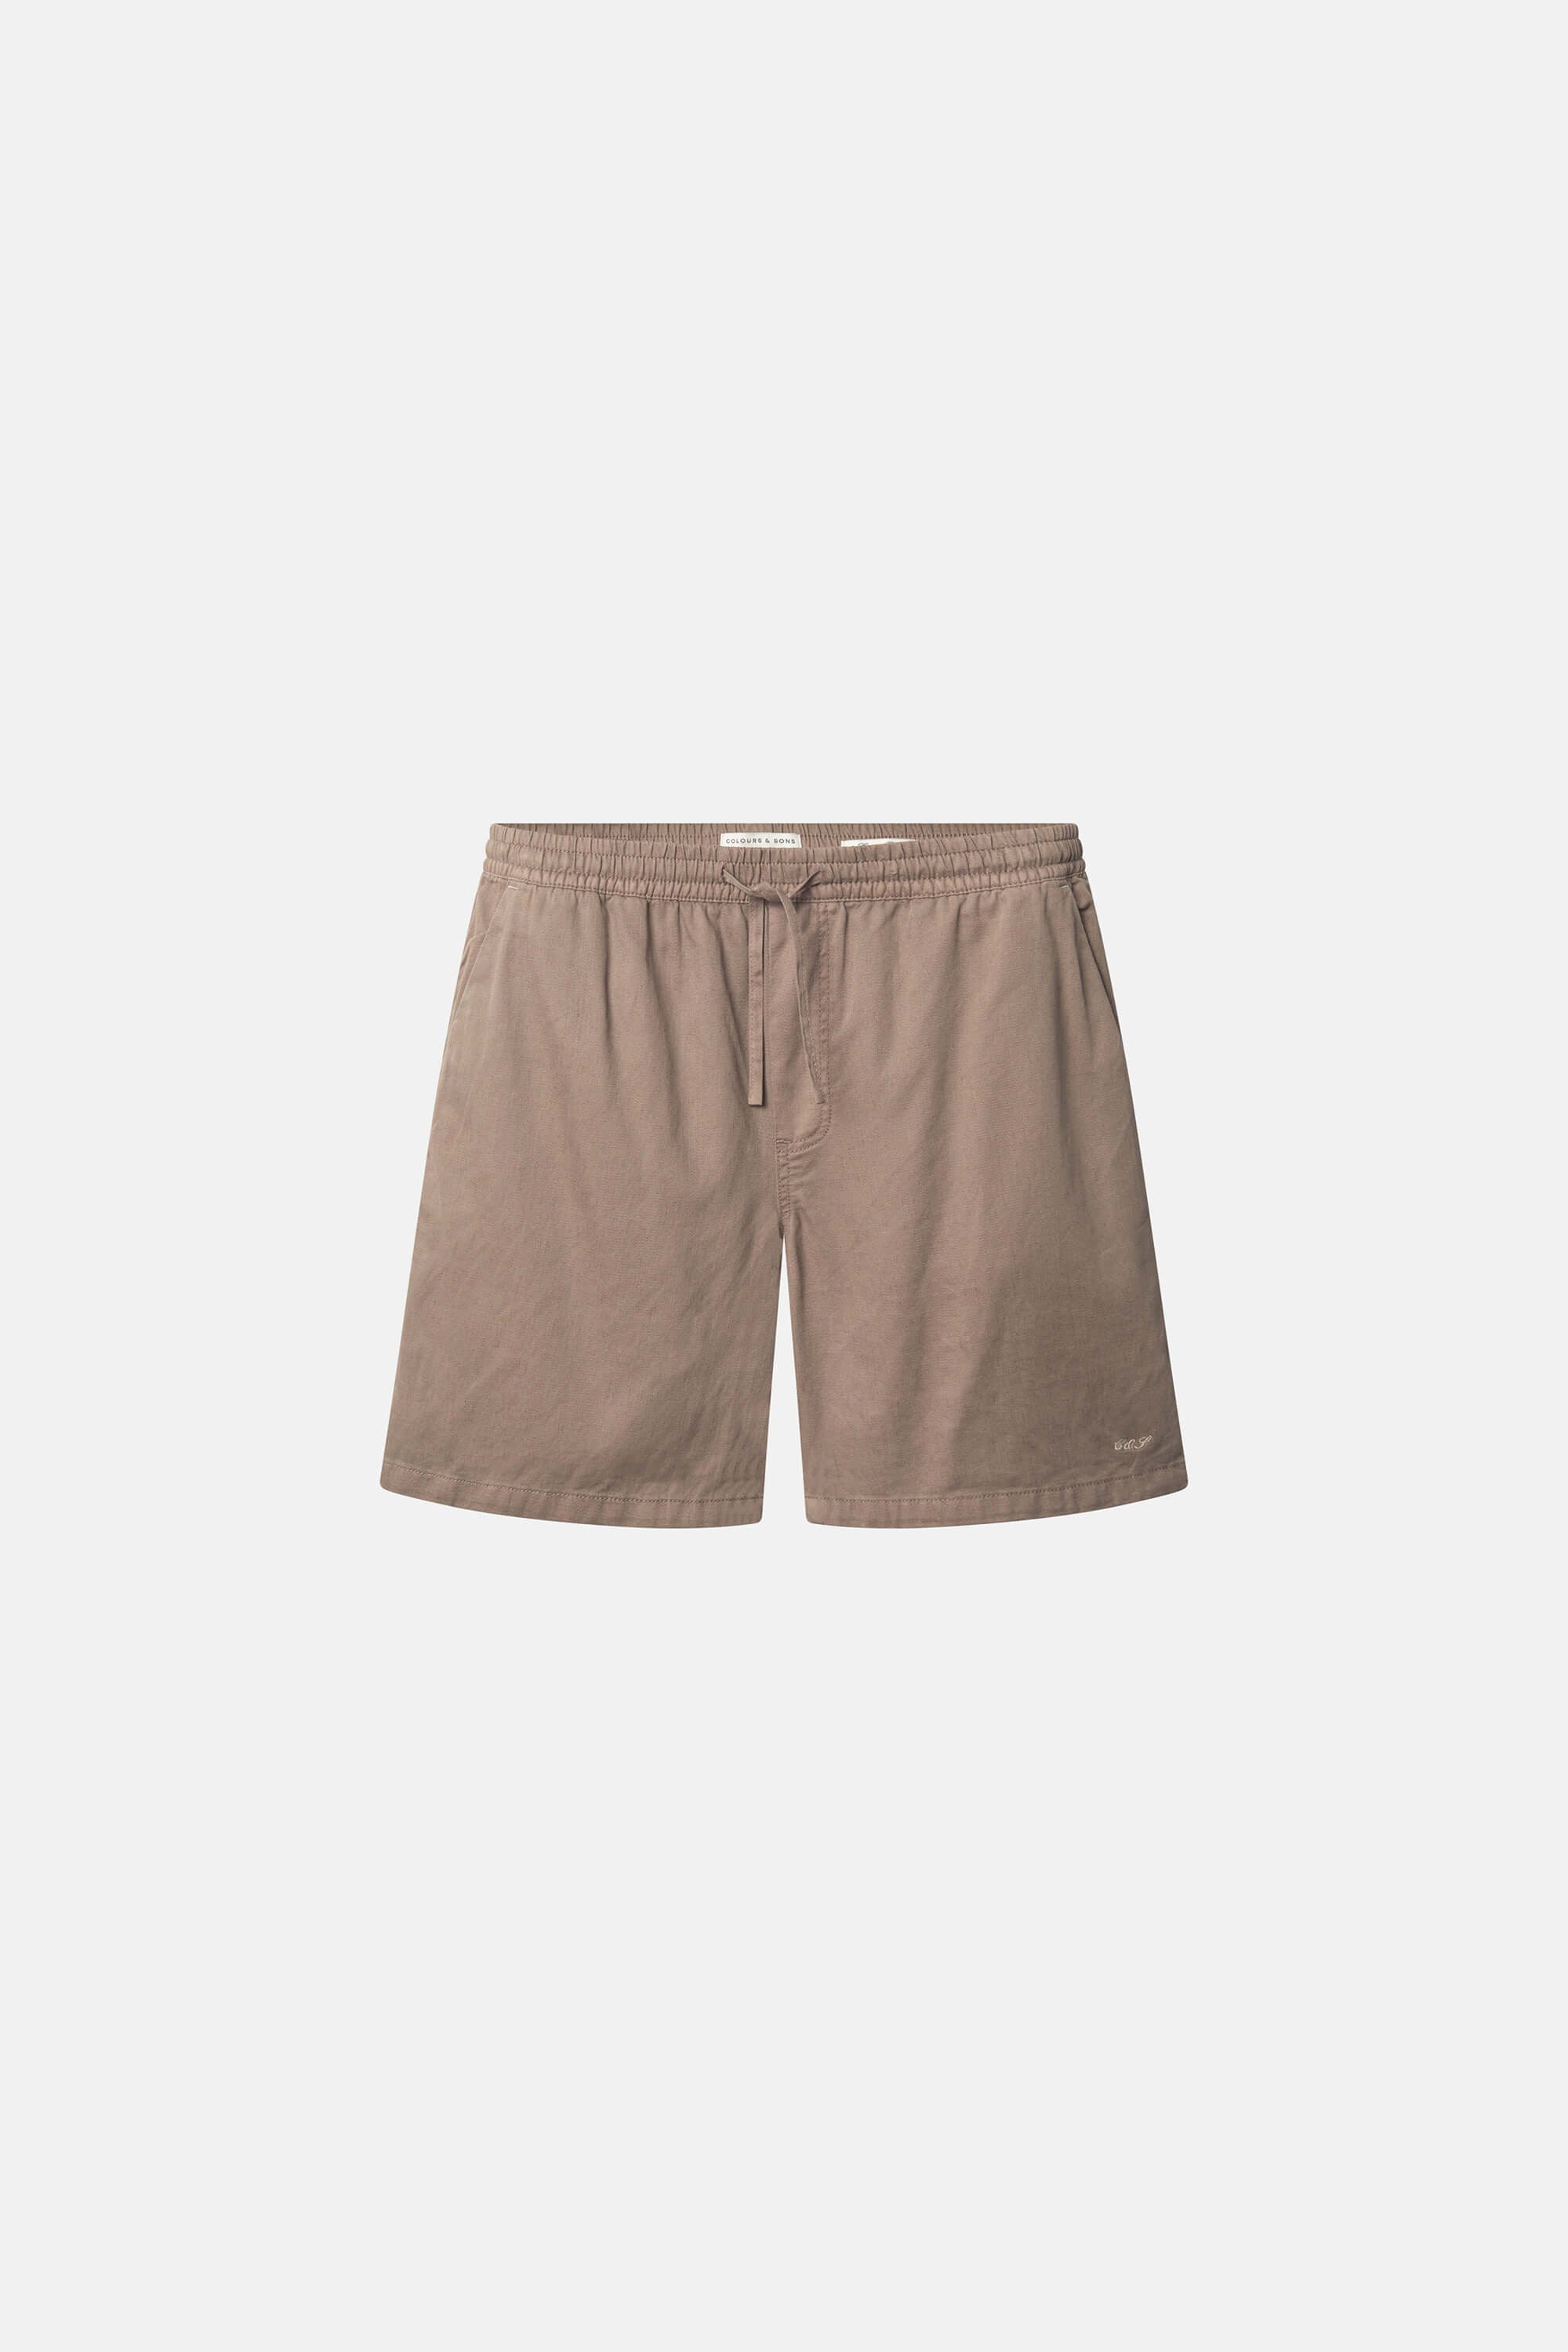 Herren Shorts, braun,  60% Baumwolle 40% Leinen von Colours & Sons